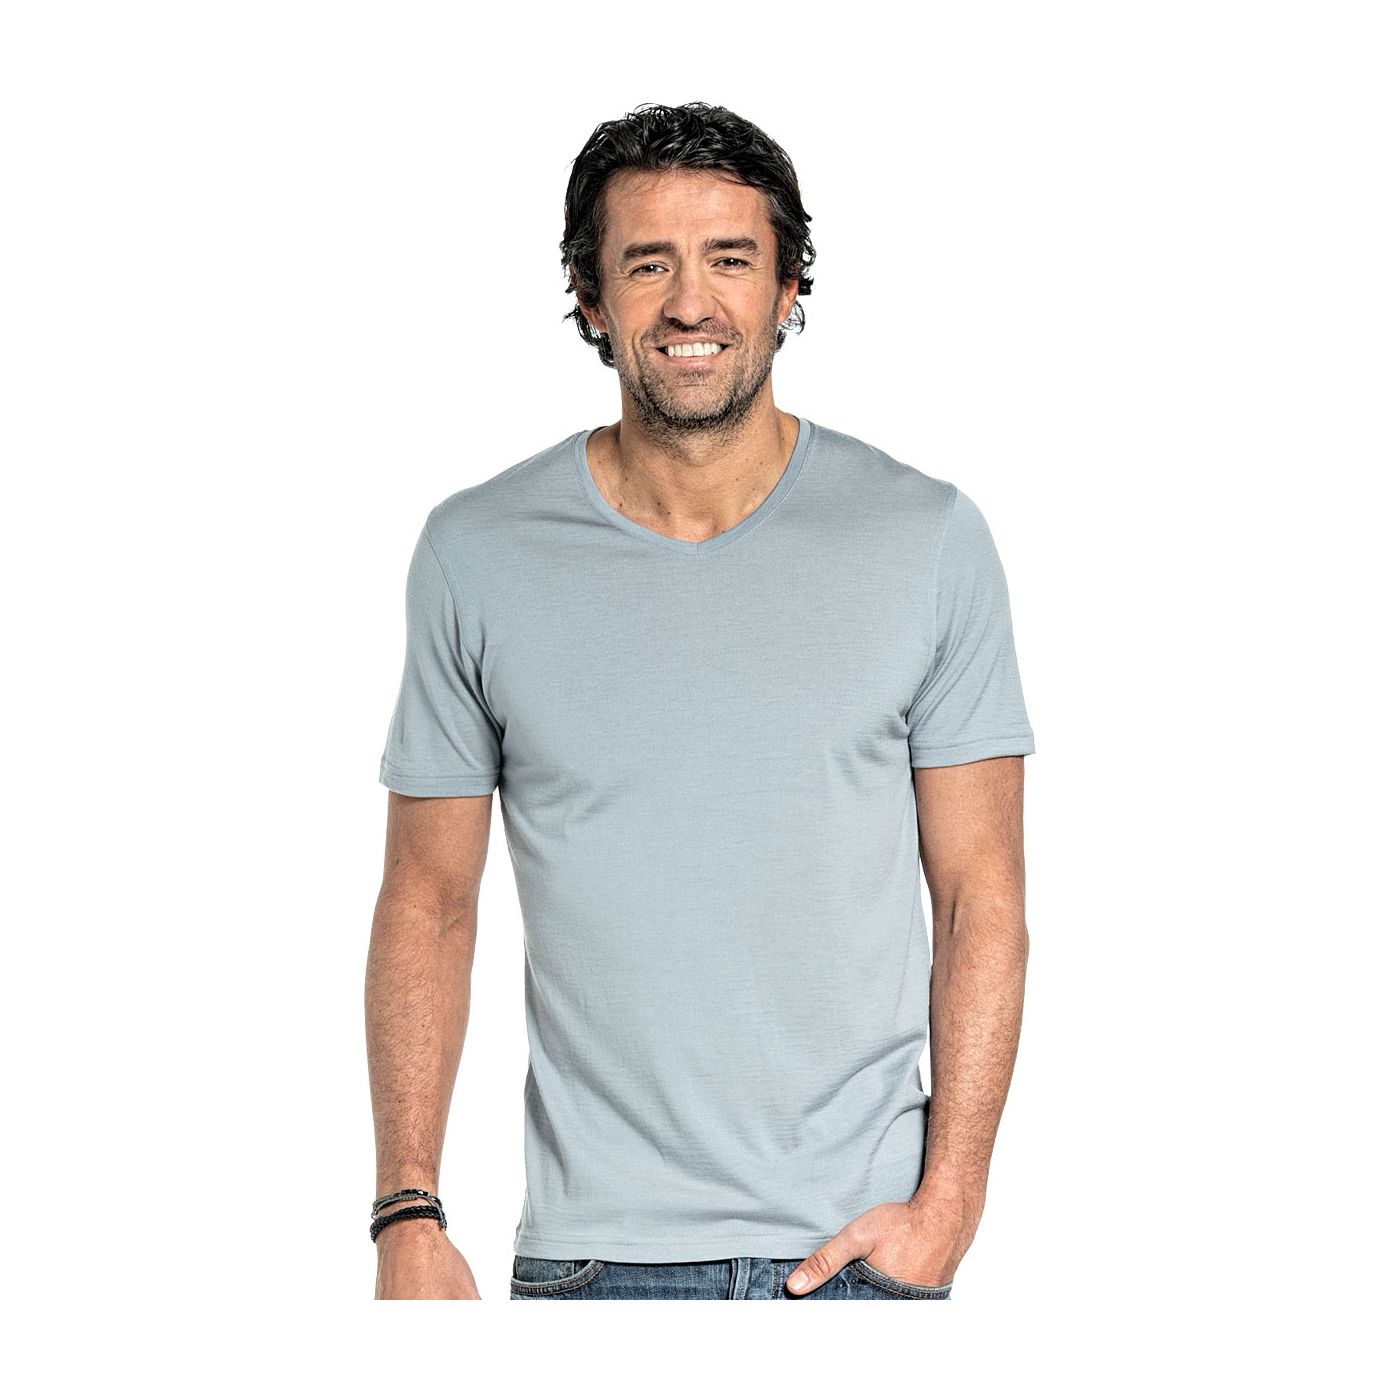 T-shirt met V hals voor mannen gemaakt van merinowol in het Grijsblauw